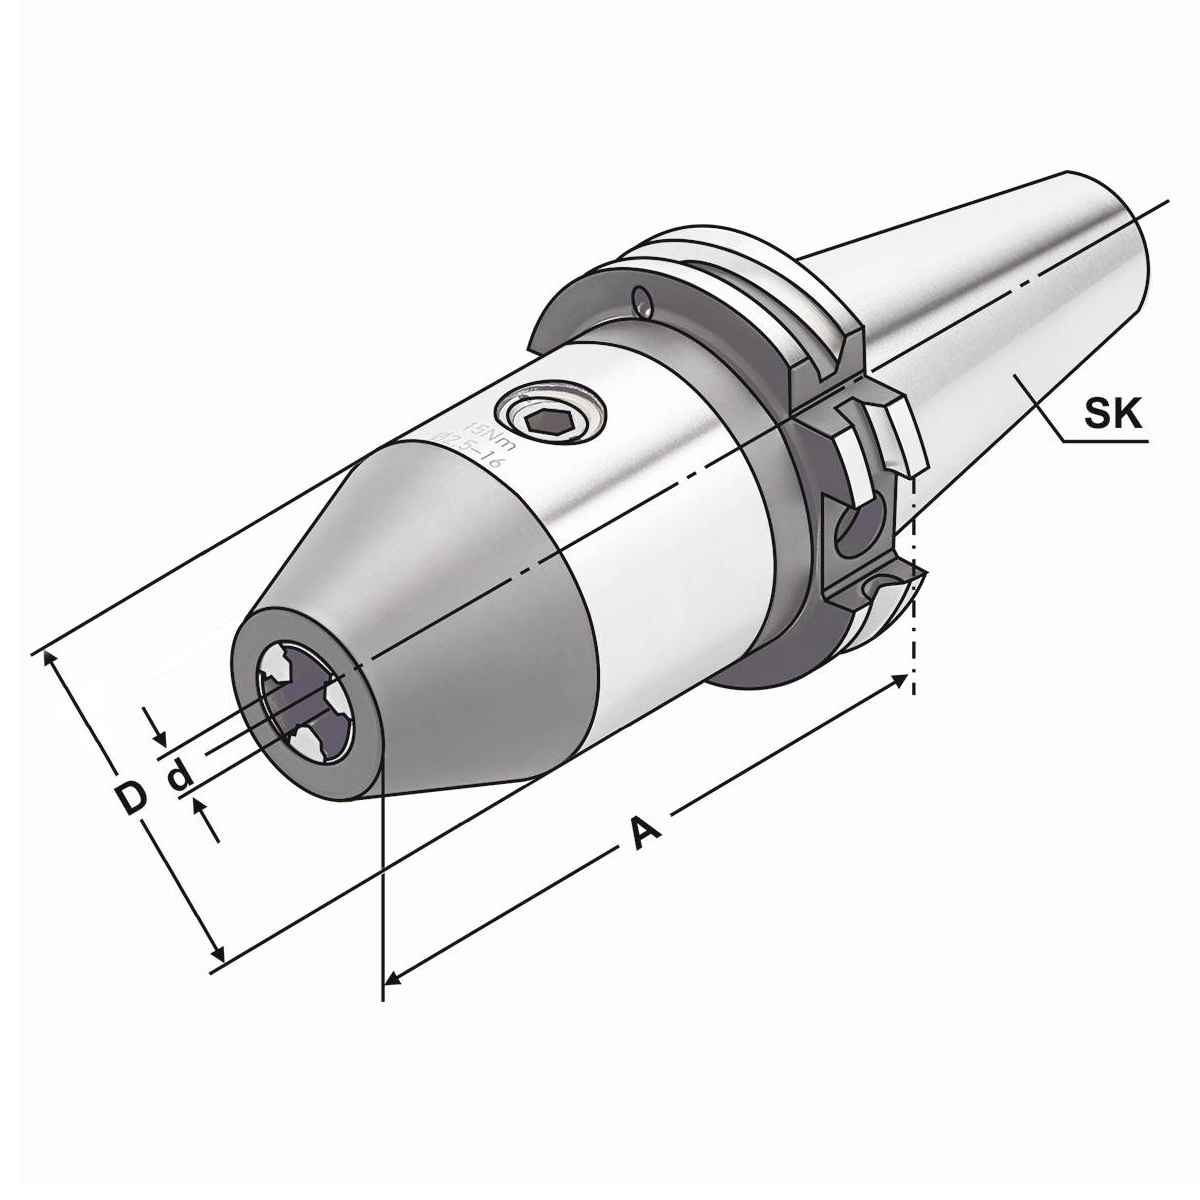 CNC-Bohrfutter SK 30-2,5/16-116 DIN 69871 AD